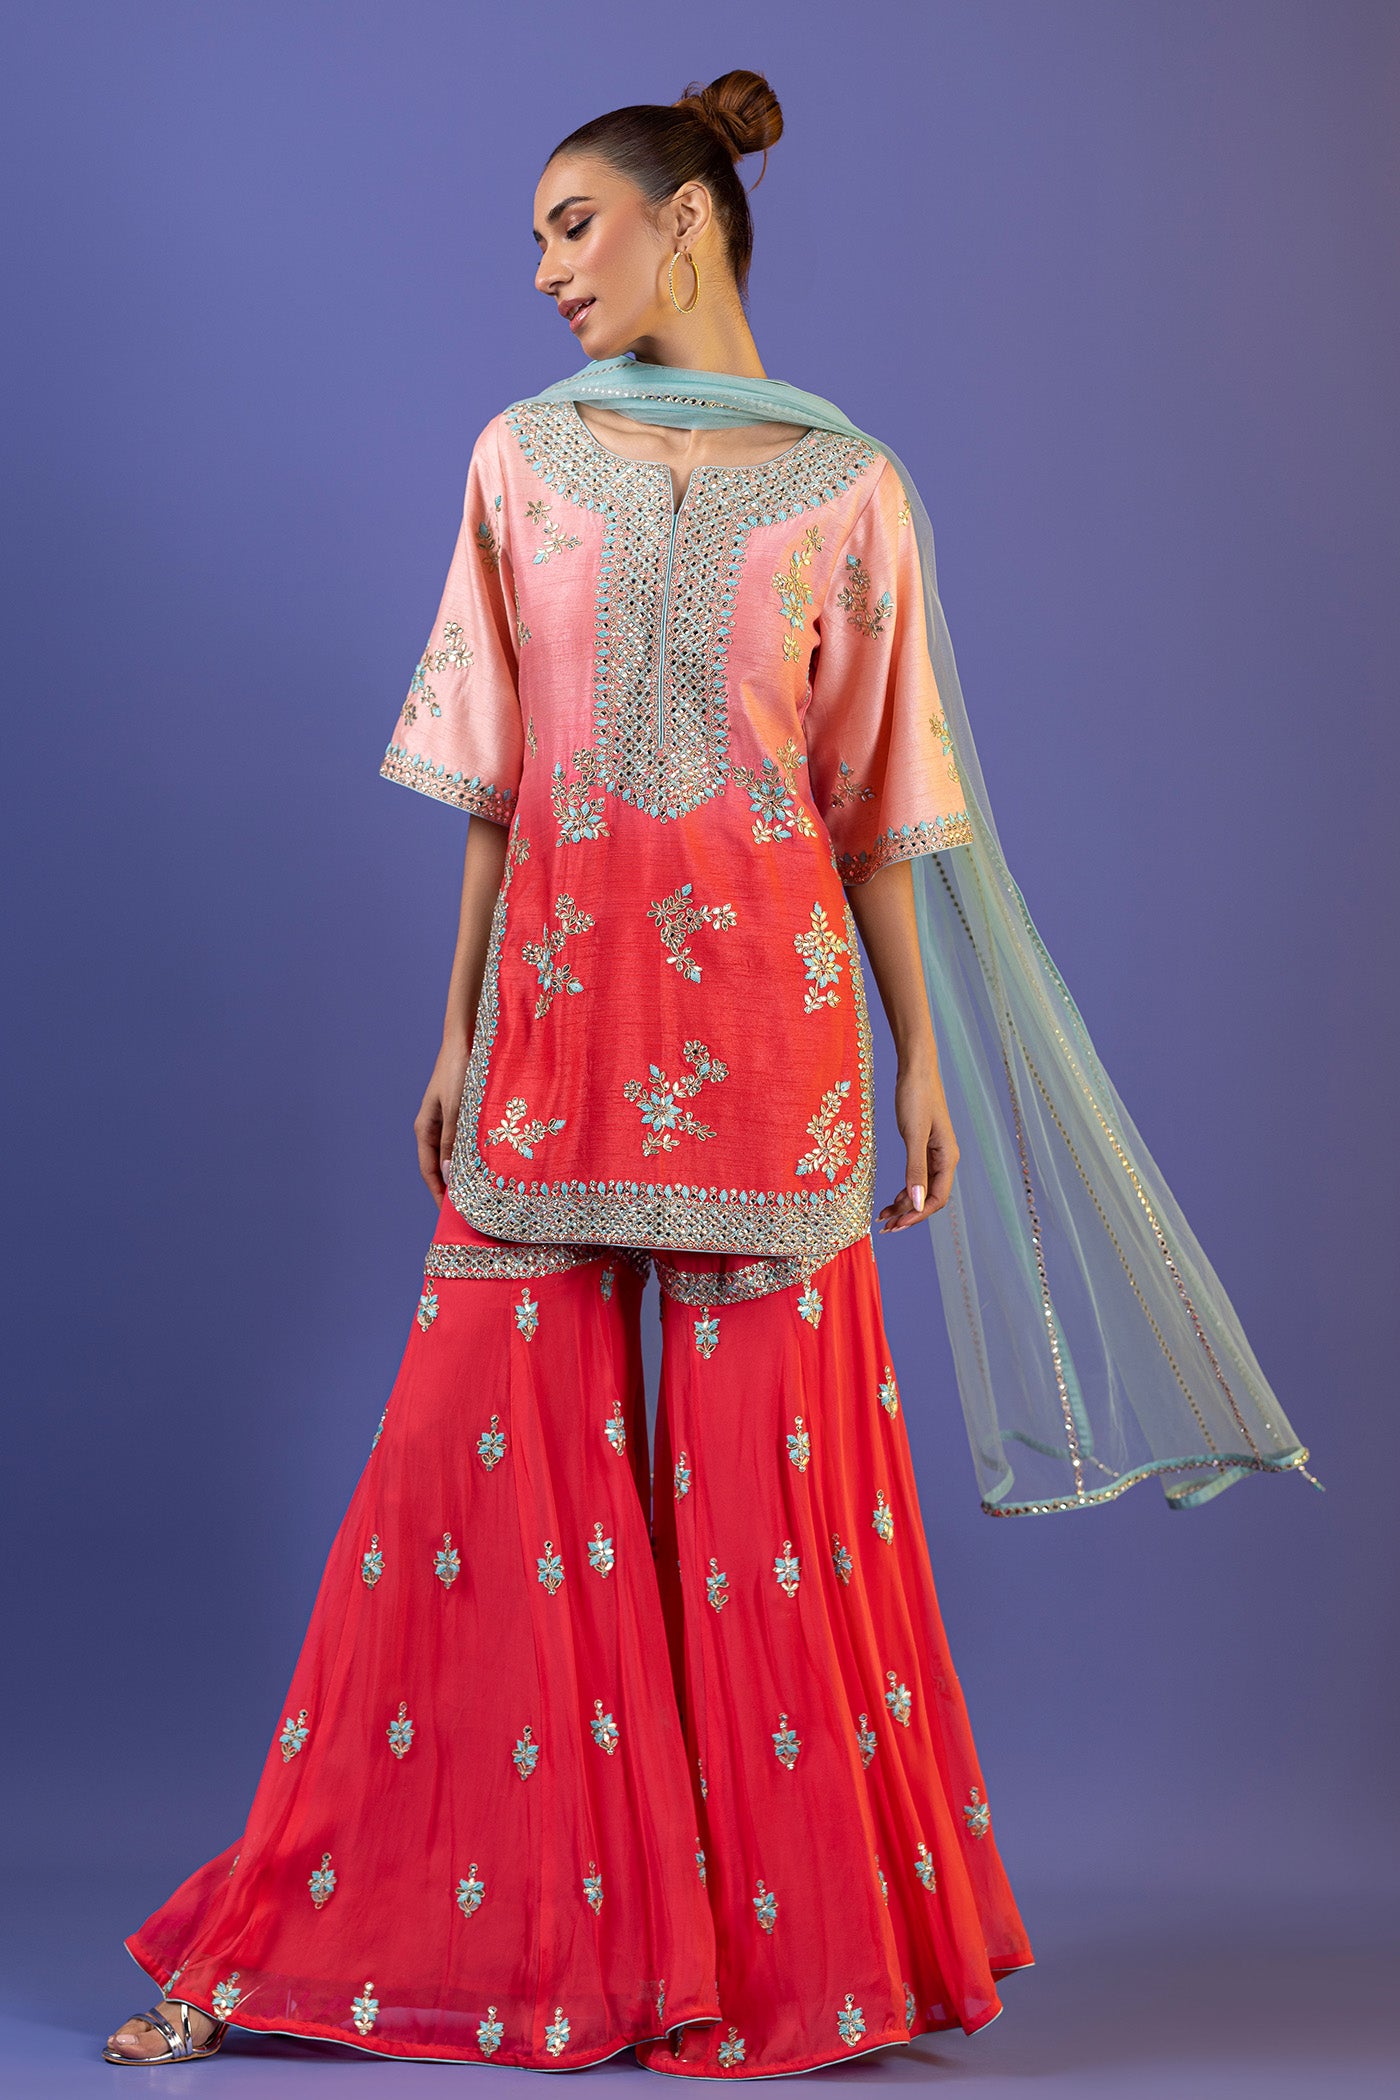 Raw Silk Gharara In Pink With Kundan And Dori Work